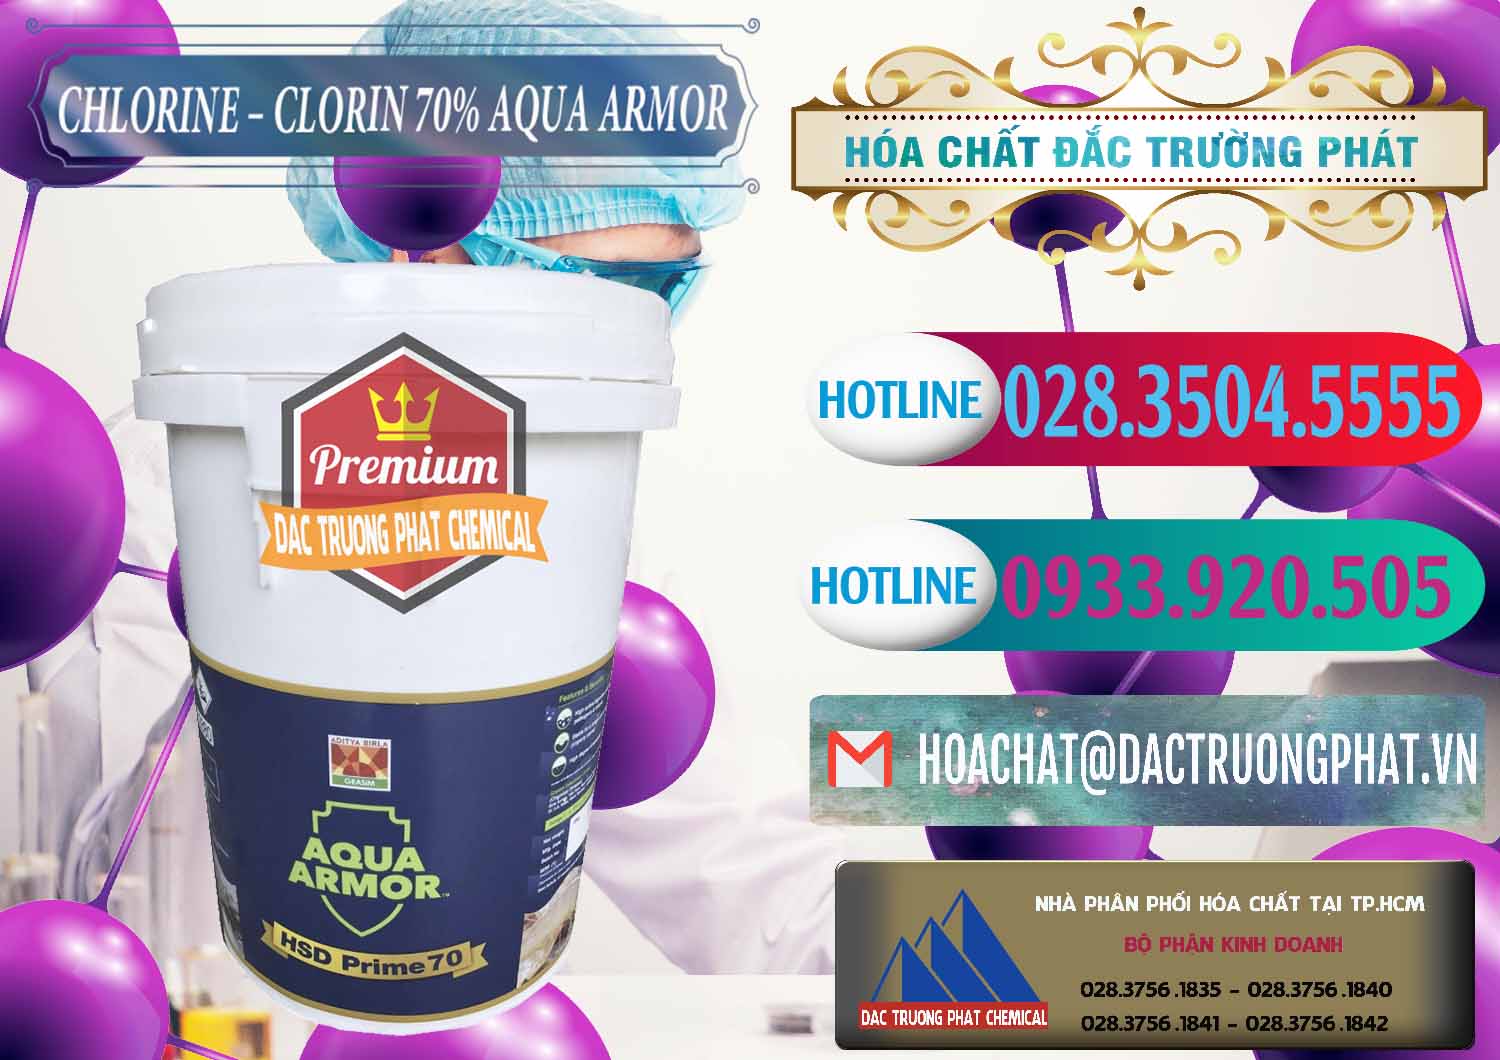 Đơn vị chuyên bán và cung cấp Chlorine – Clorin 70% Aqua Armor Aditya Birla Grasim Ấn Độ India - 0241 - Công ty phân phối - cung cấp hóa chất tại TP.HCM - truongphat.vn